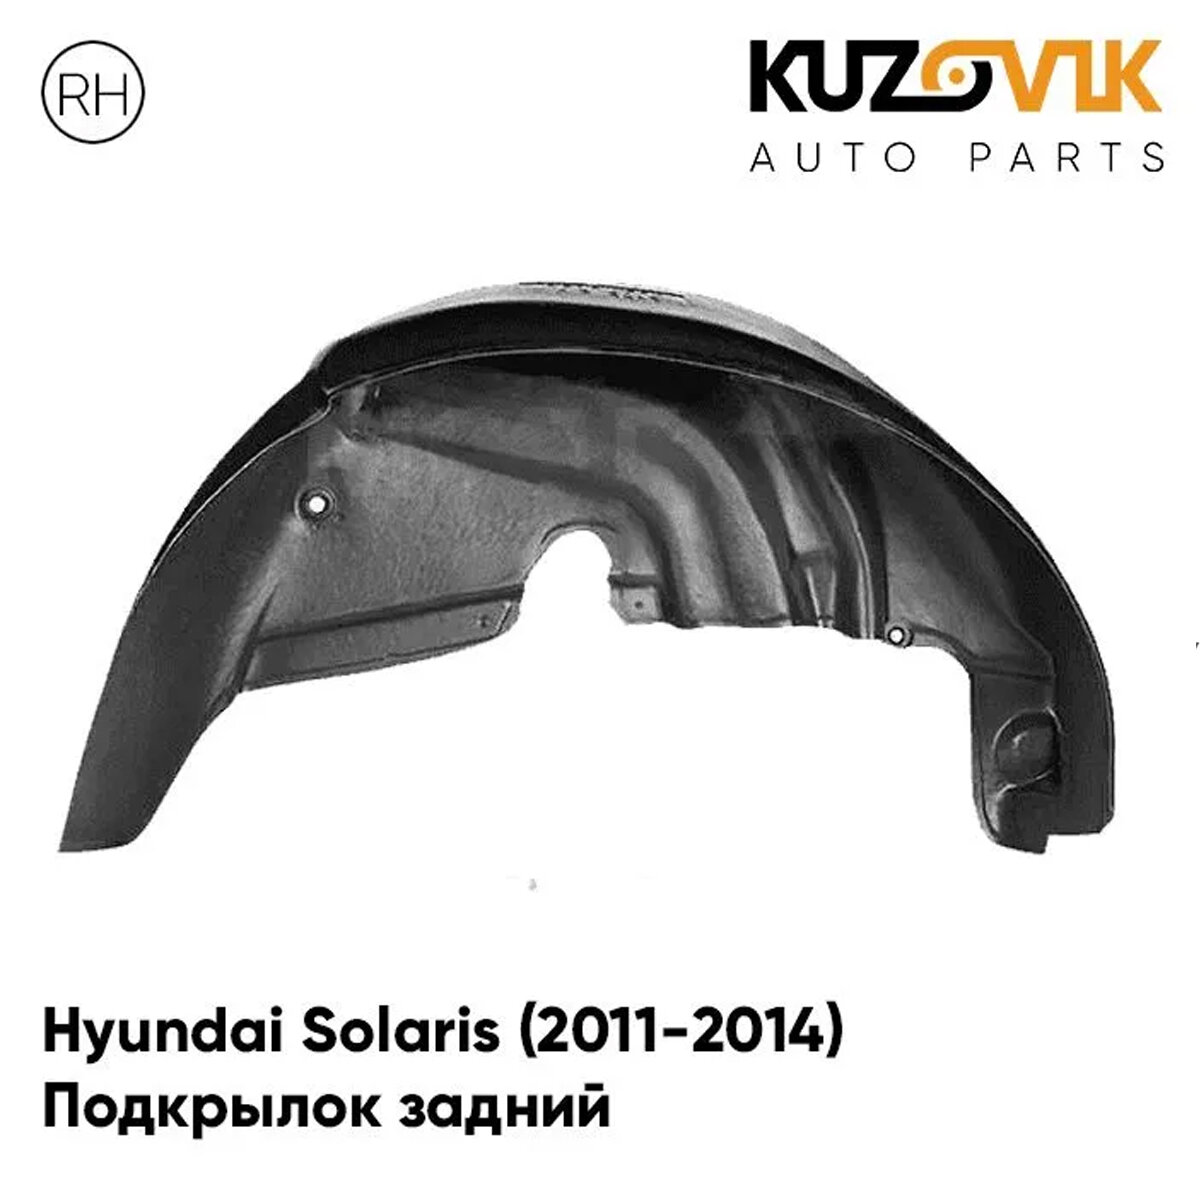 Подкрылок задний правый Hyundai Solaris Хендай Солярис (2011-2014) на всю арку